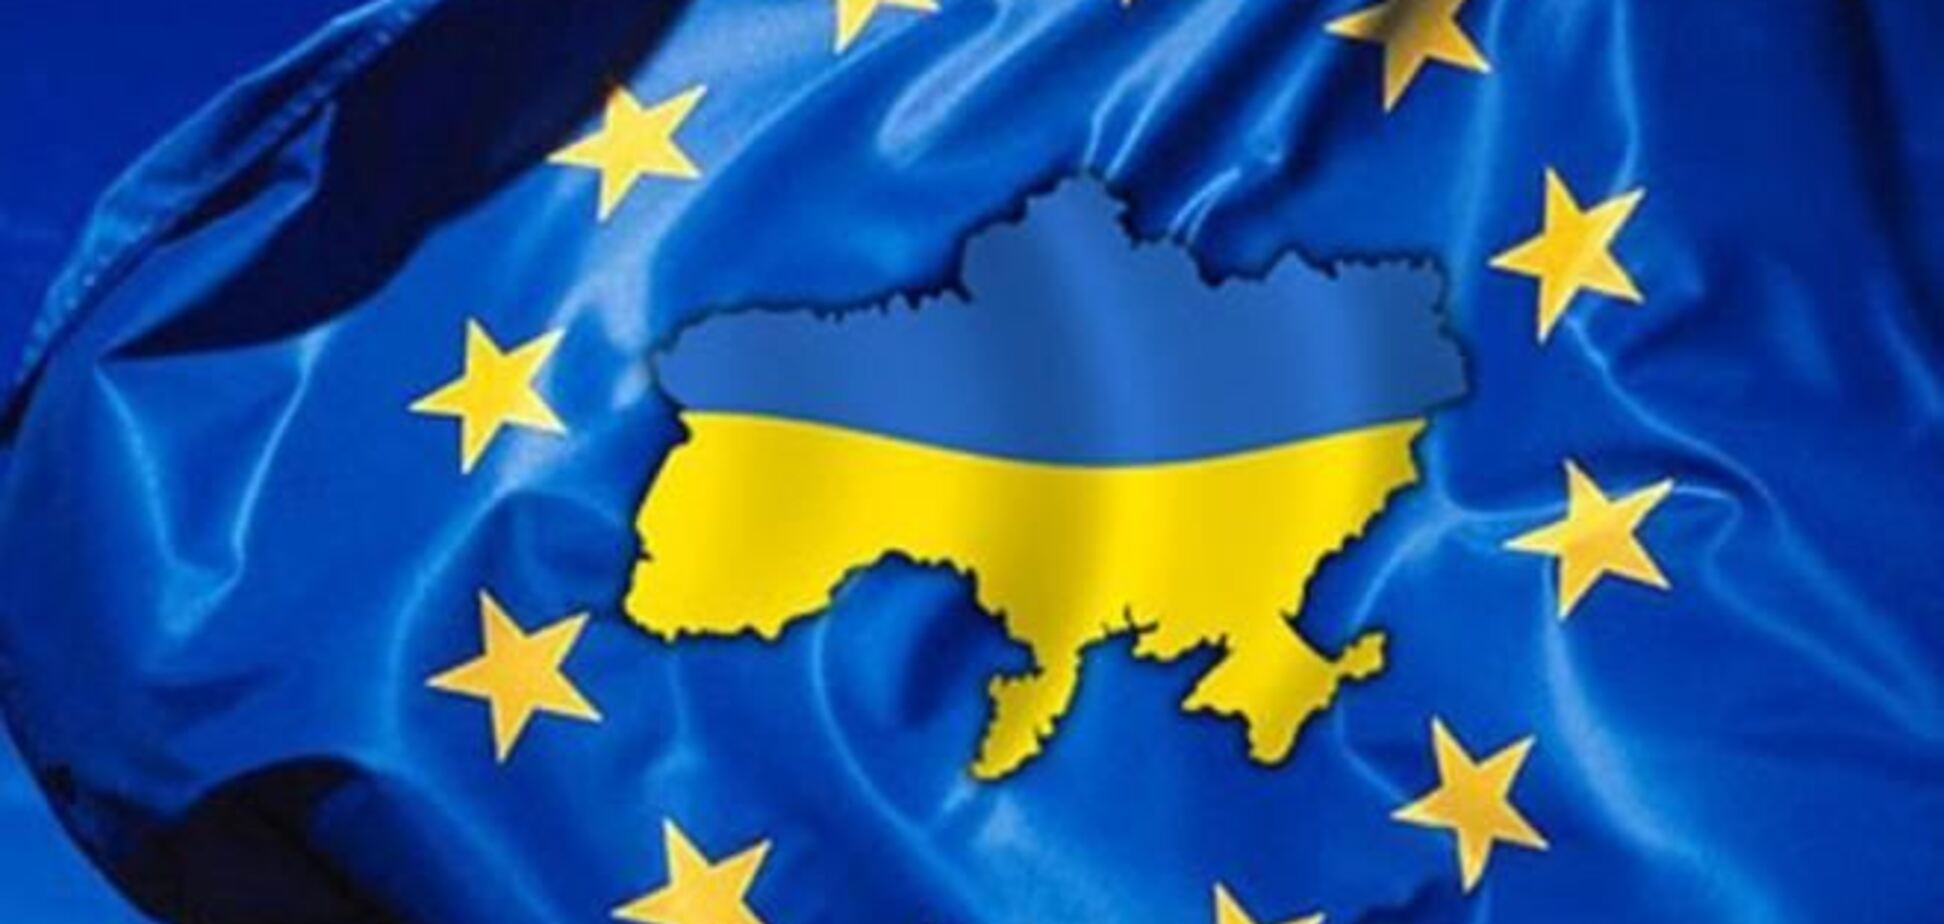 Отказ от Ассоциации негативно повлияет на бизнес в Украине - ЕБА